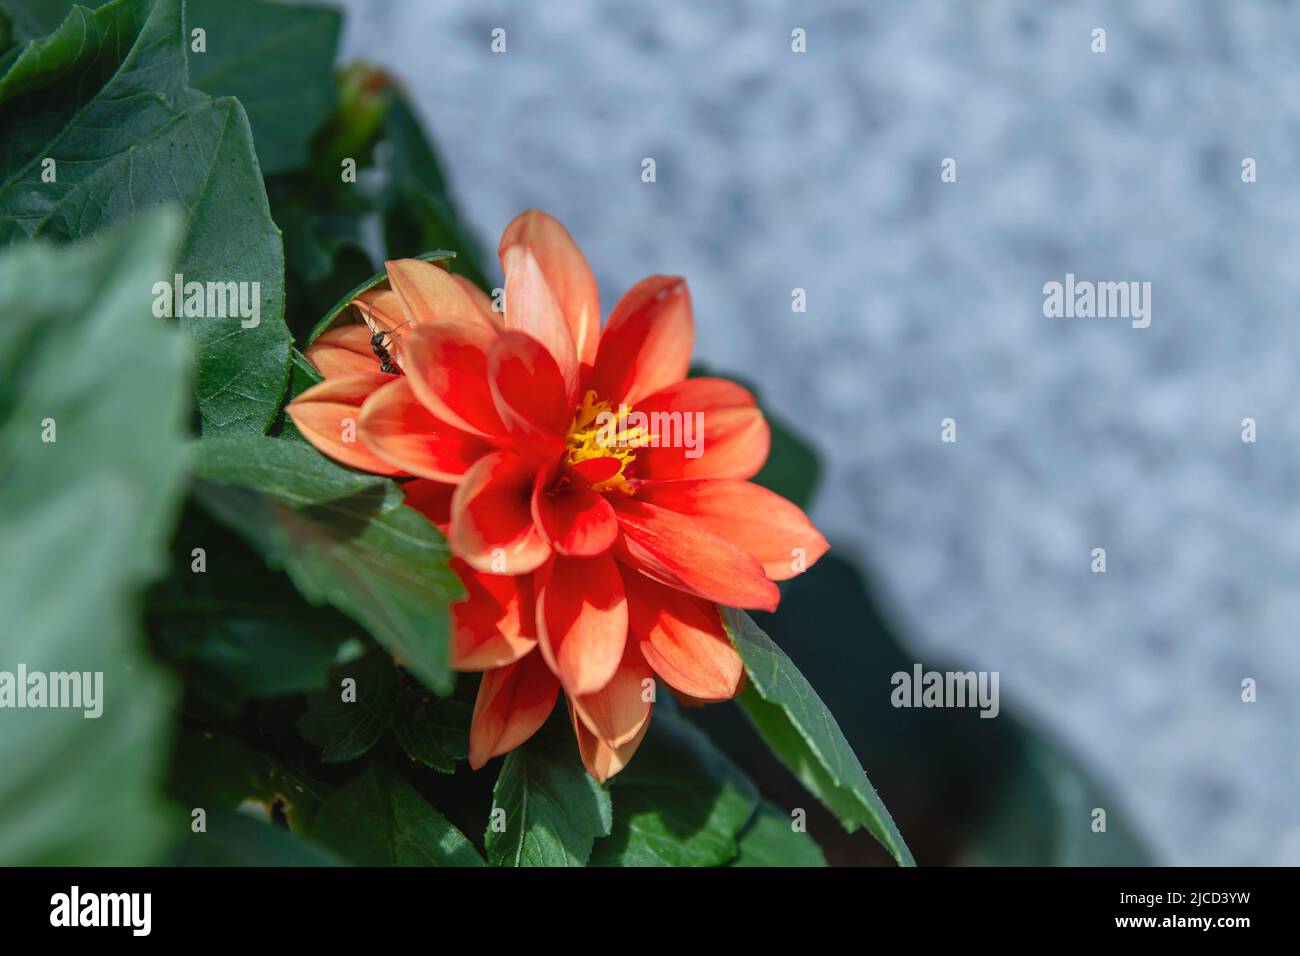 Dahlia pinnata (garden dahlia) red flower close up Stock Photo